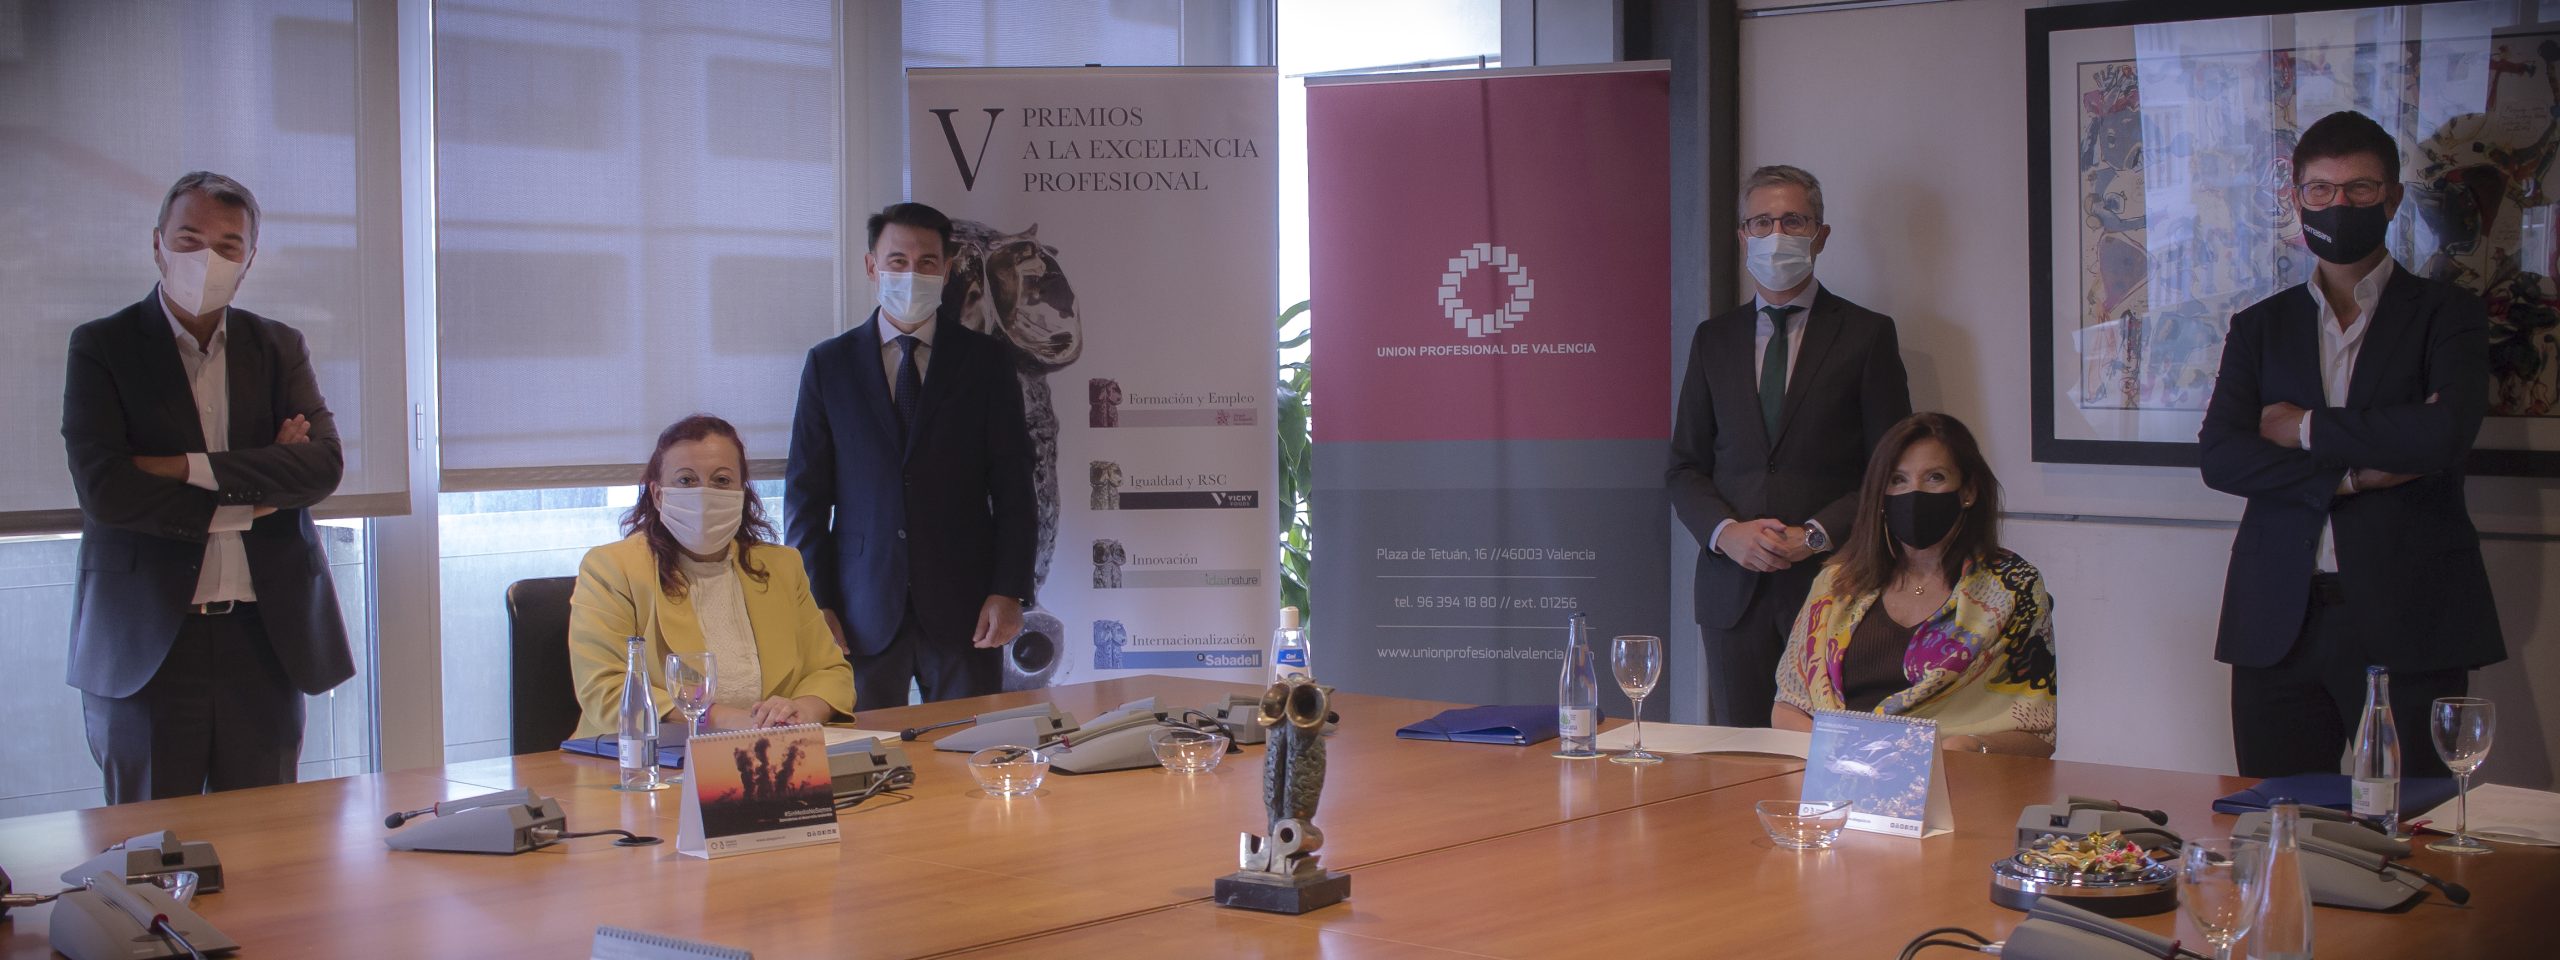 Florida Universitària, Viktor E. Frankl, Cirurgia robòtica CV i Valenciaport, guanyadors dels V Premis a l’Excel·lència Professional